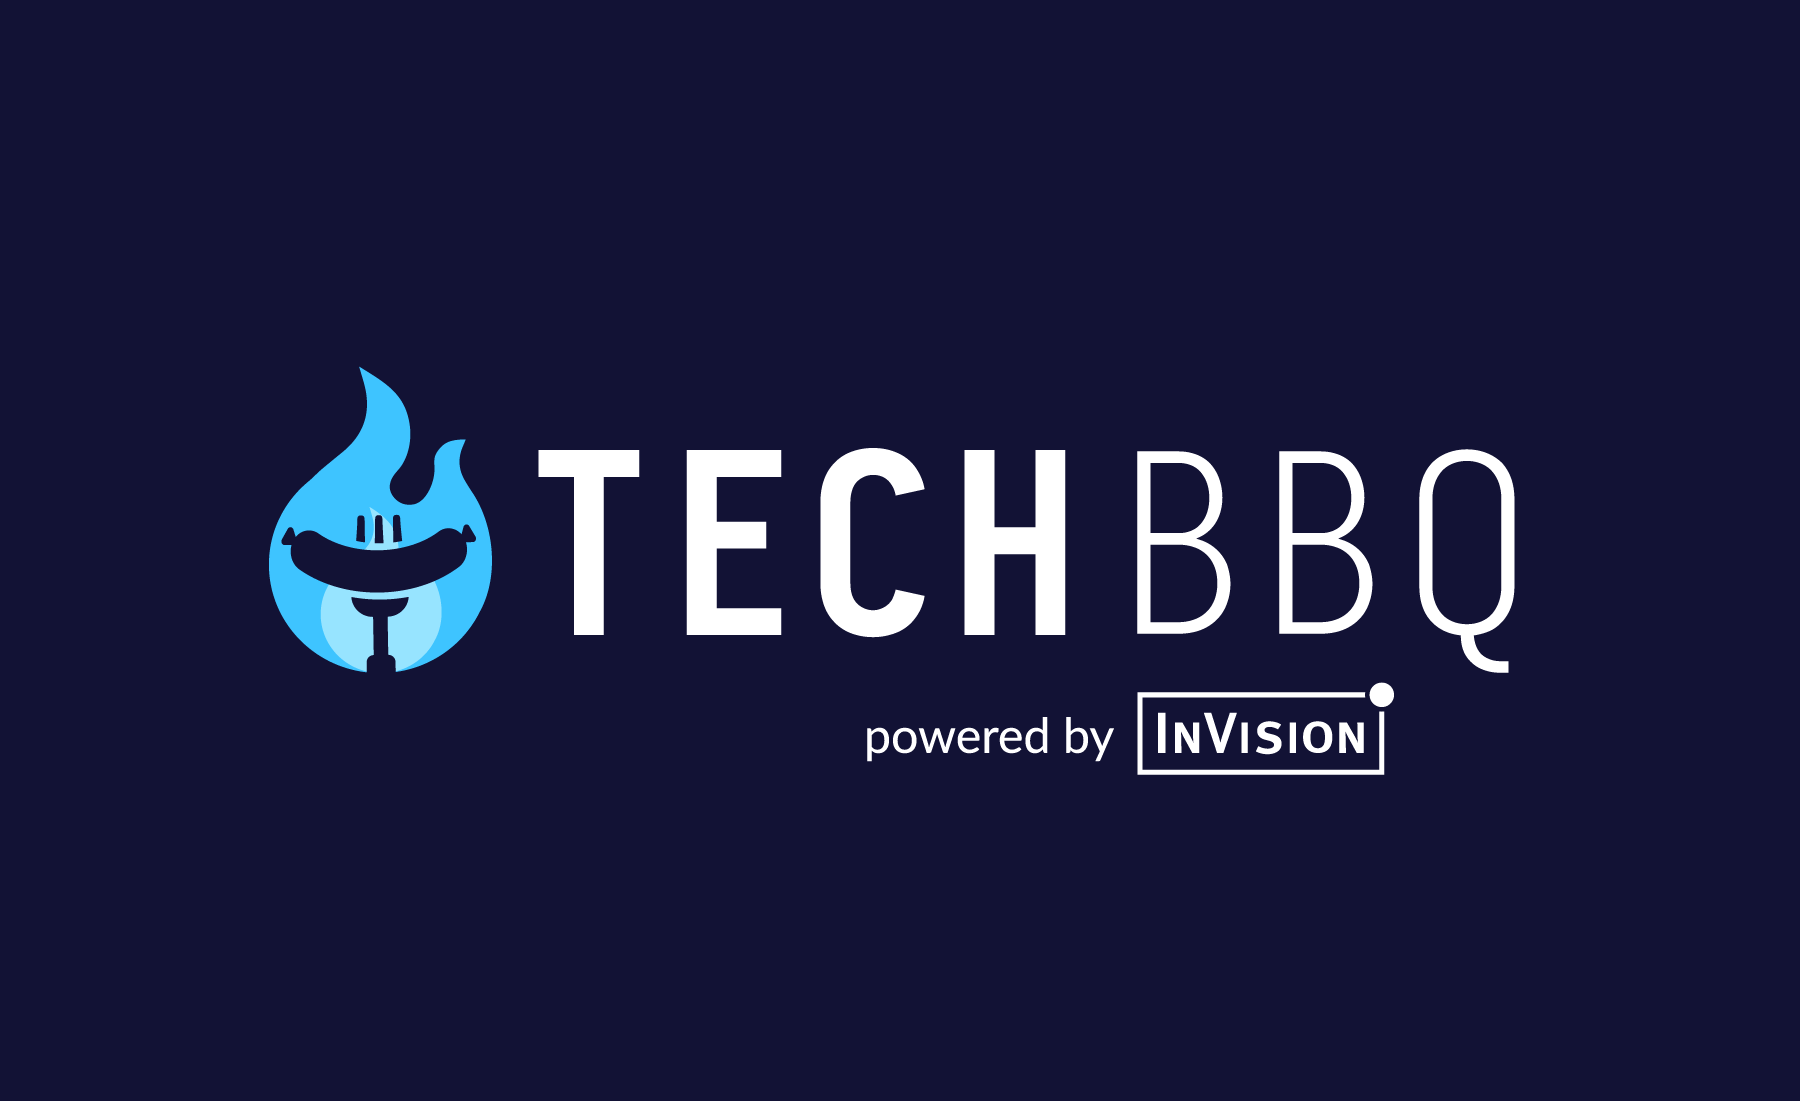 InVision Tech BBQ 2019 Image